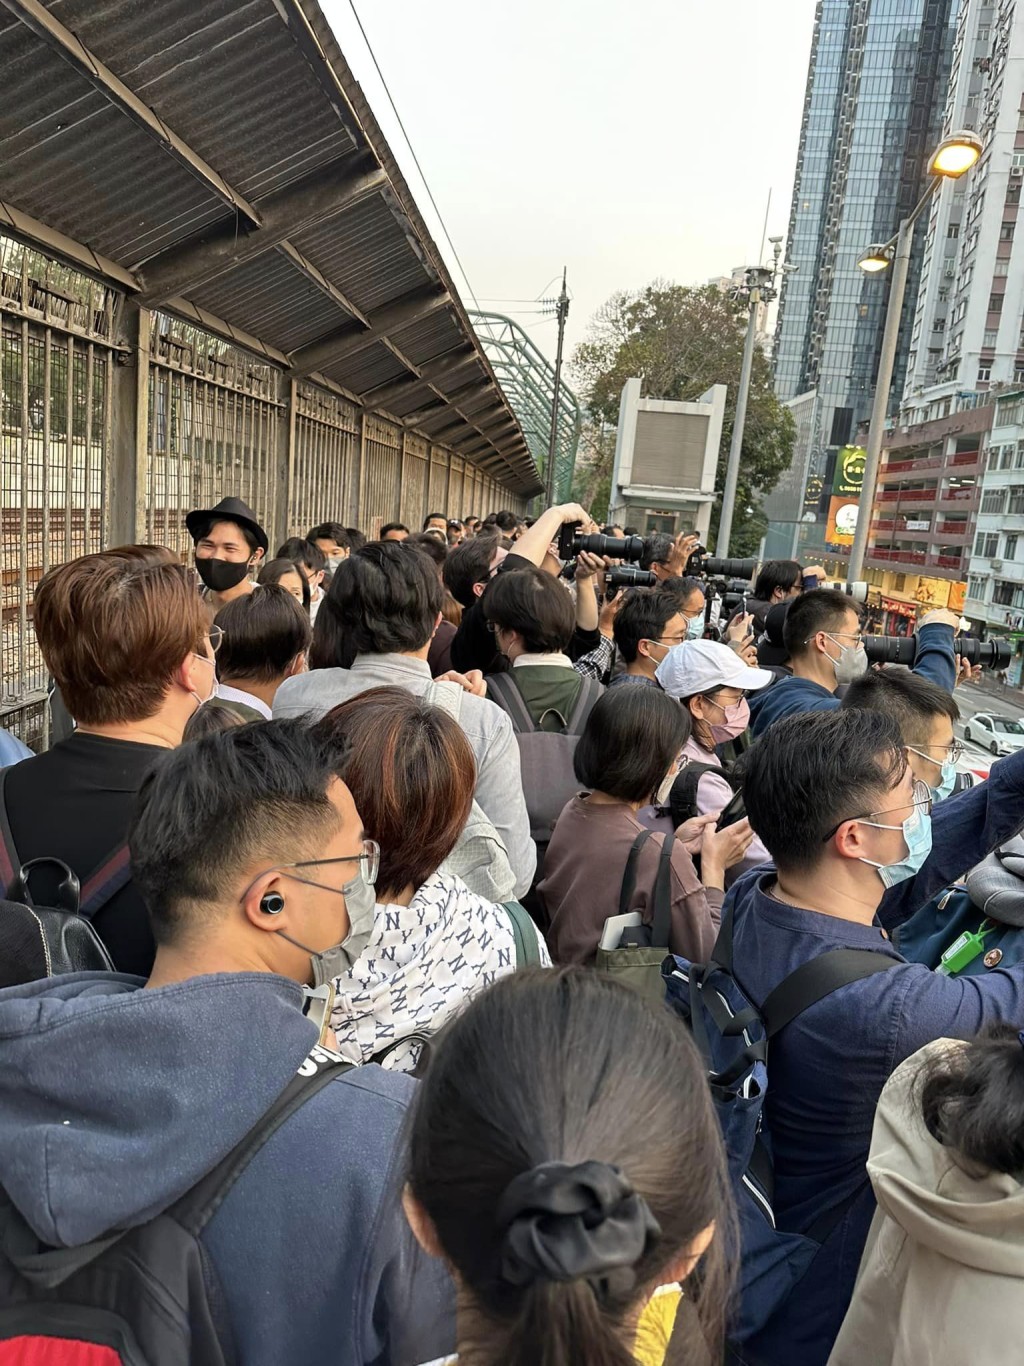 桥上挤满人。网民P.P. Chan图片